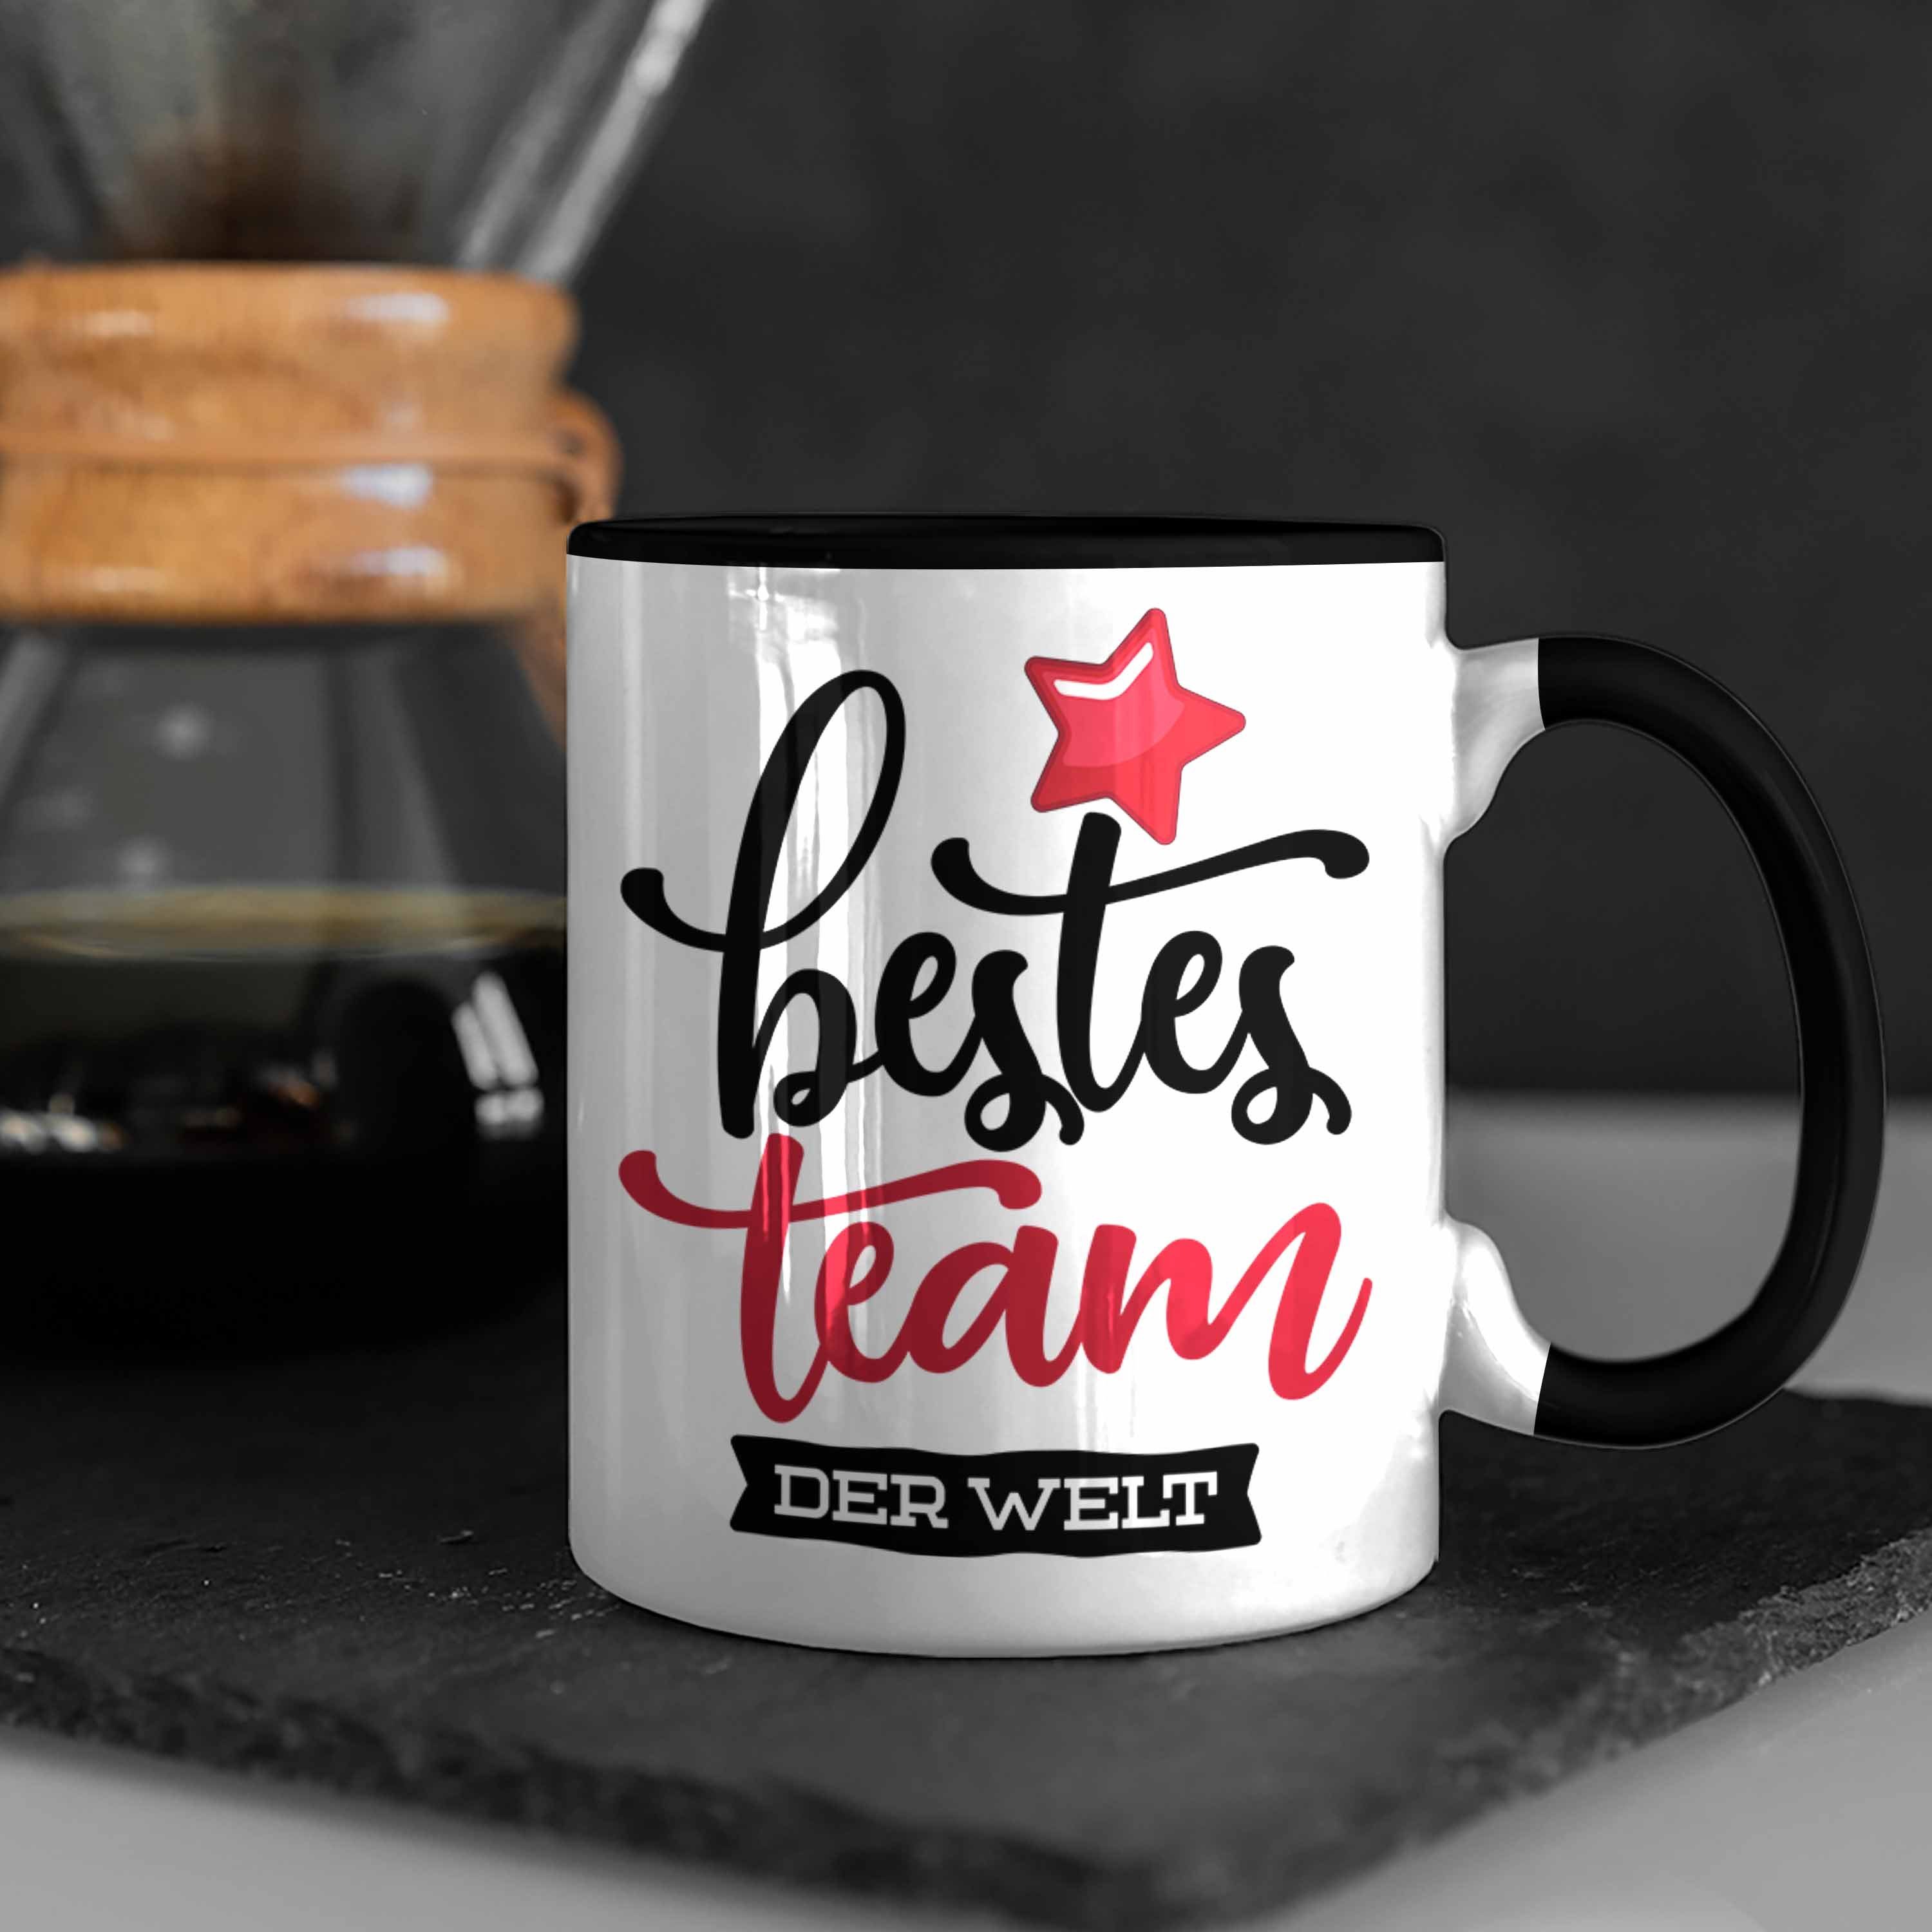 Trendation Tasse Team Welt beste der Schwarz Geschenkidee Kaffeetassen Team für